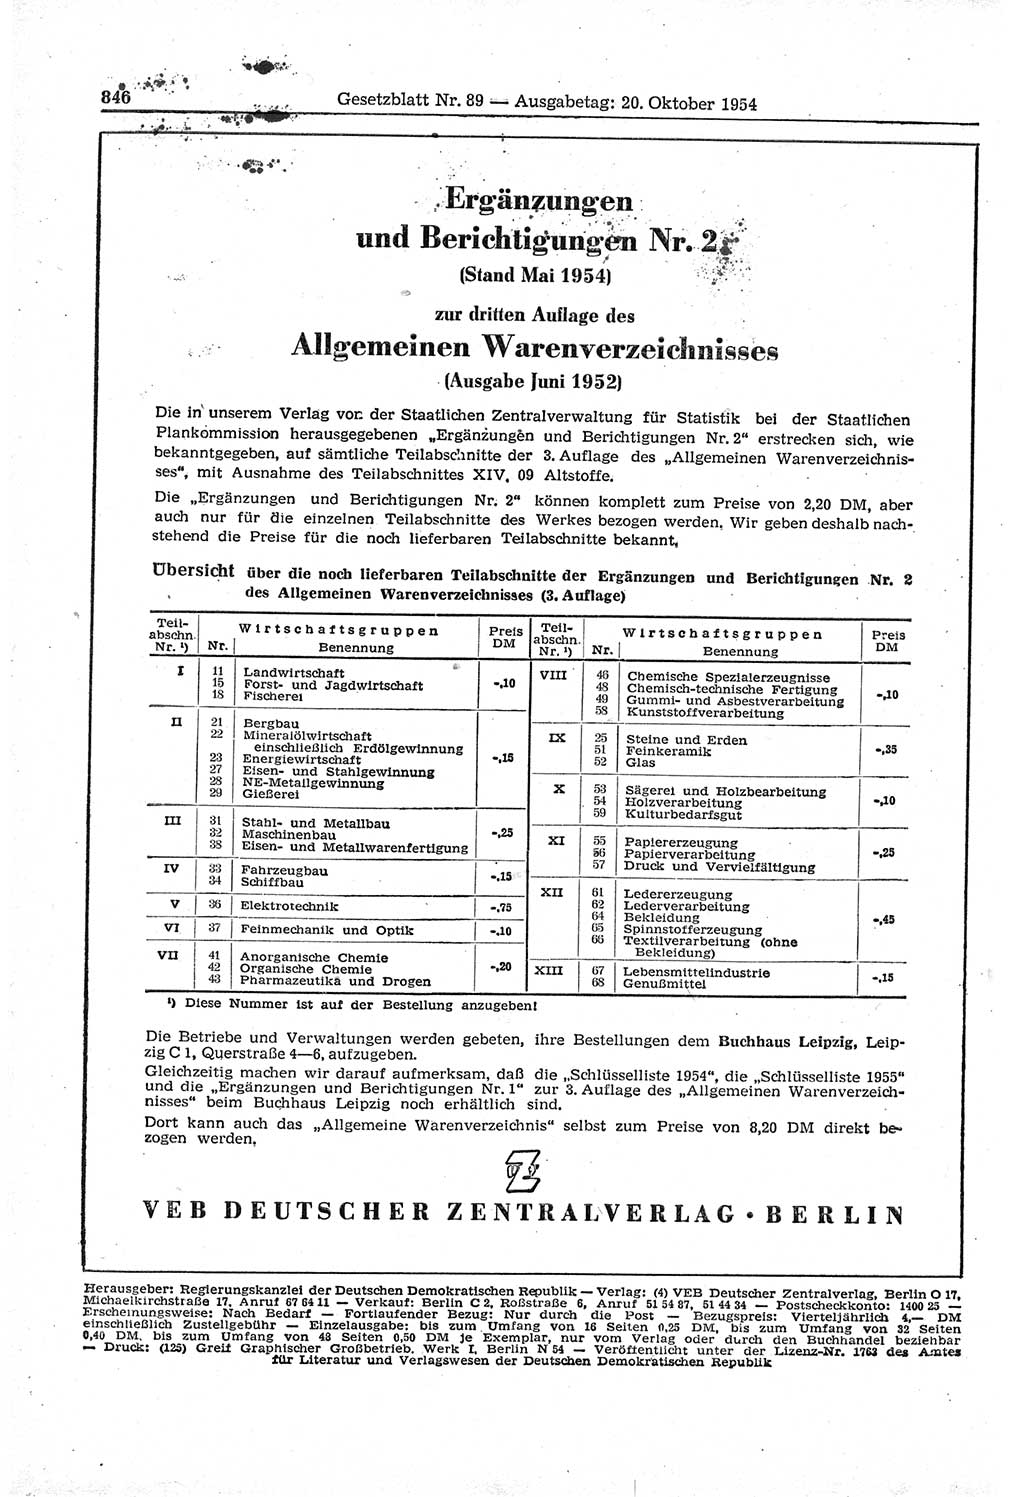 Gesetzblatt (GBl.) der Deutschen Demokratischen Republik (DDR) 1954, Seite 846 (GBl. DDR 1954, S. 846)